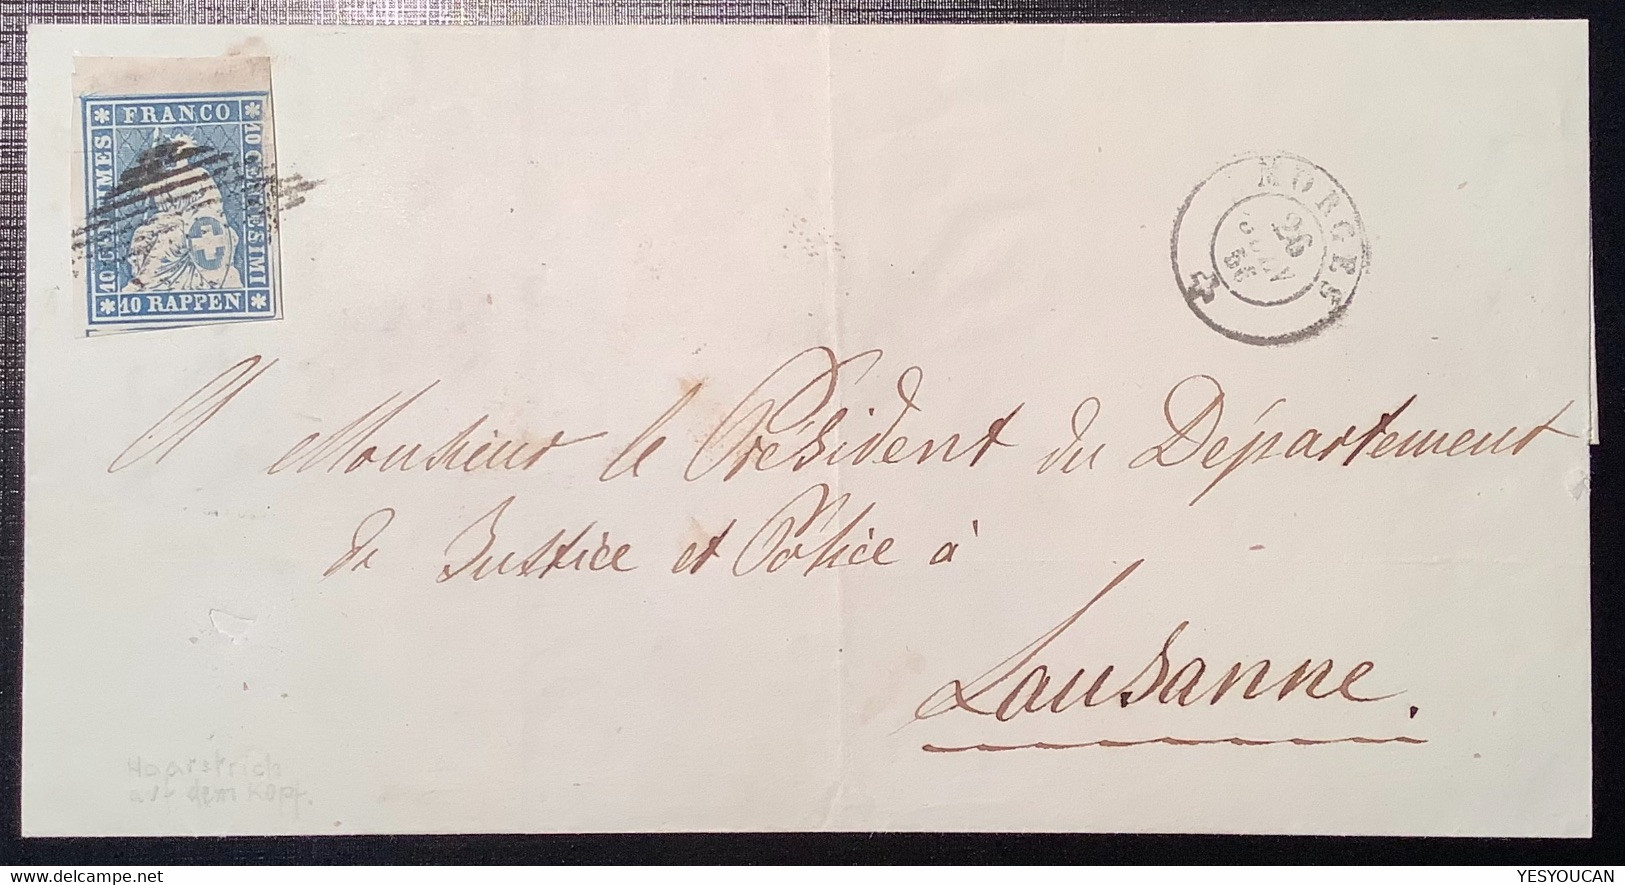 MORGES 1856 SELTENE ZNr 23F LUXUS MIT ABART Strubel Brief>Lausanne Attest Hermann (Schweiz 1854 Lettre Suisse VD Cert - Storia Postale